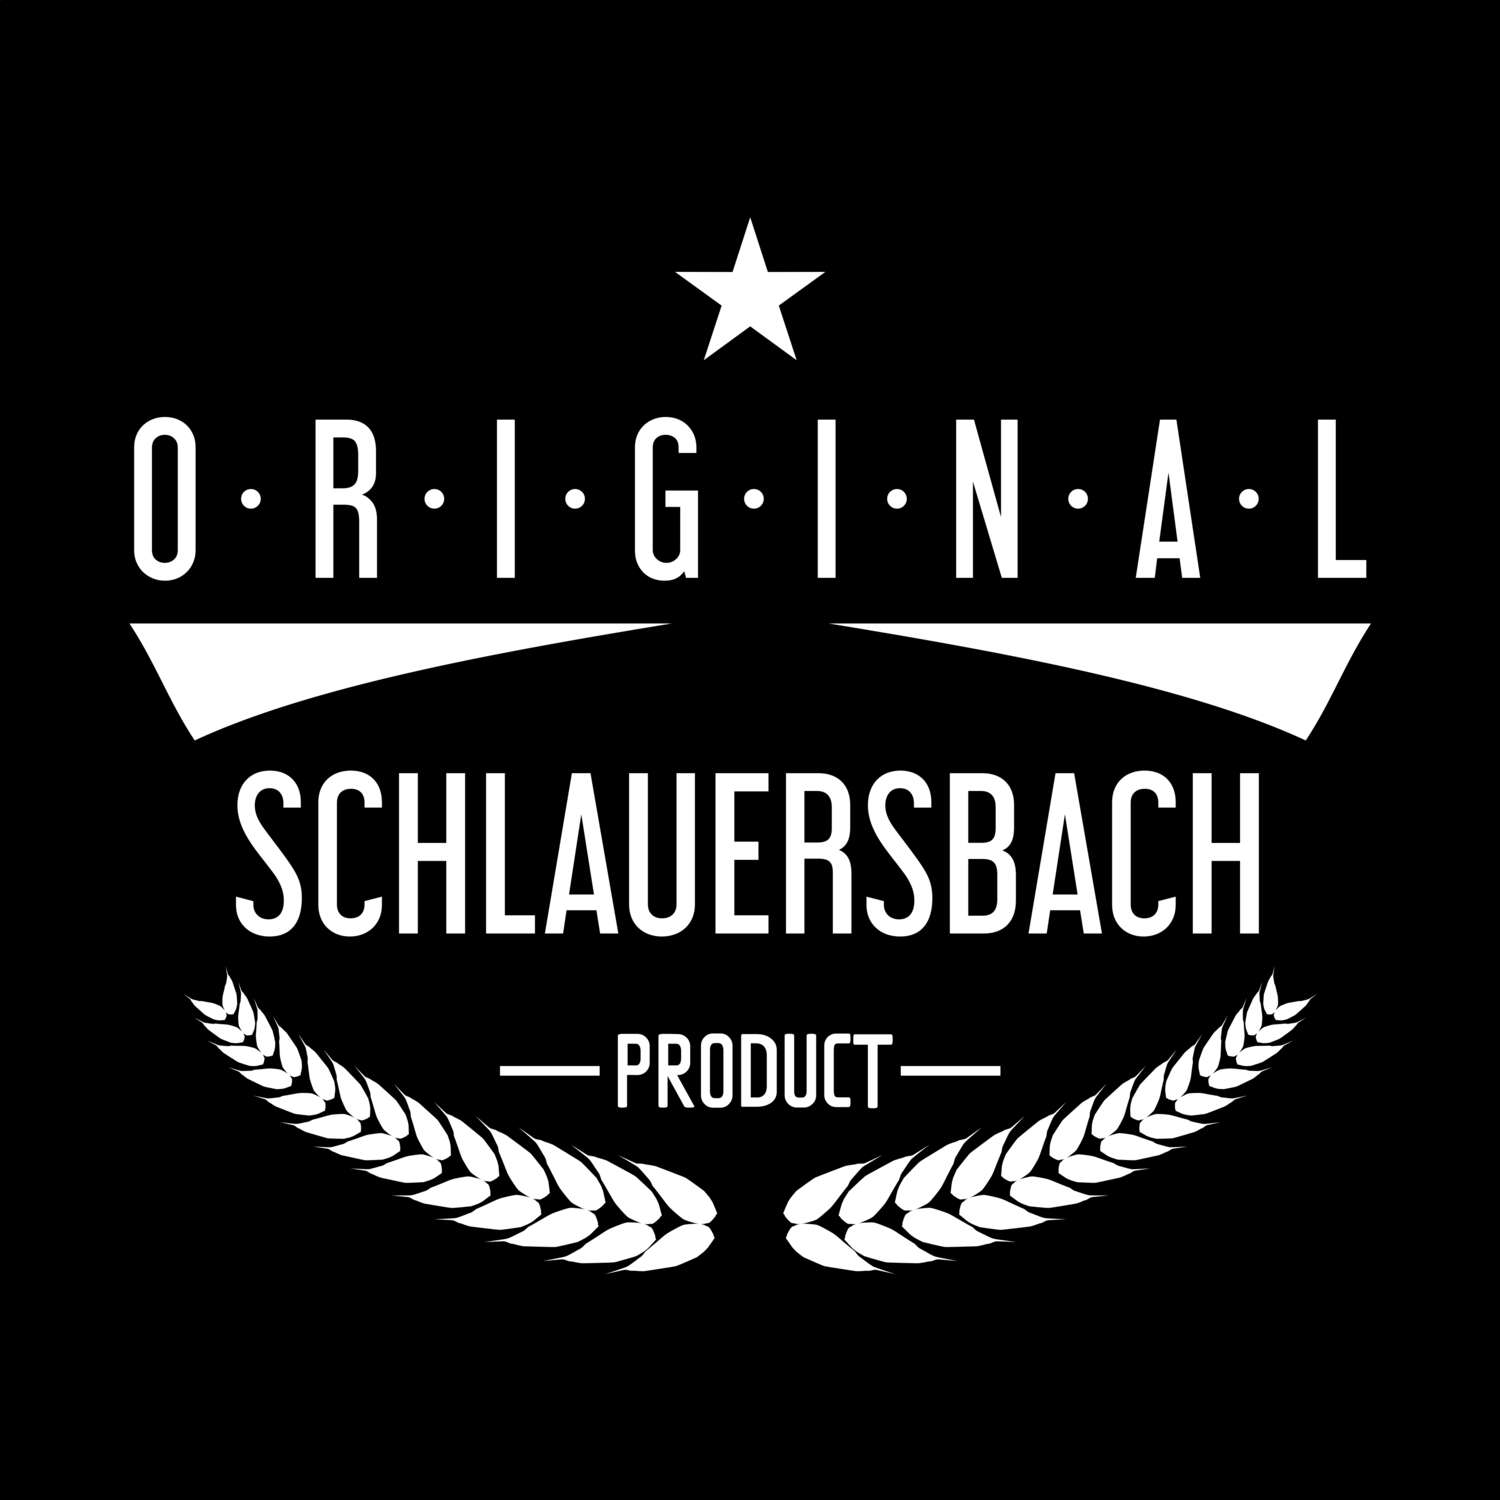 Schlauersbach T-Shirt »Original Product«